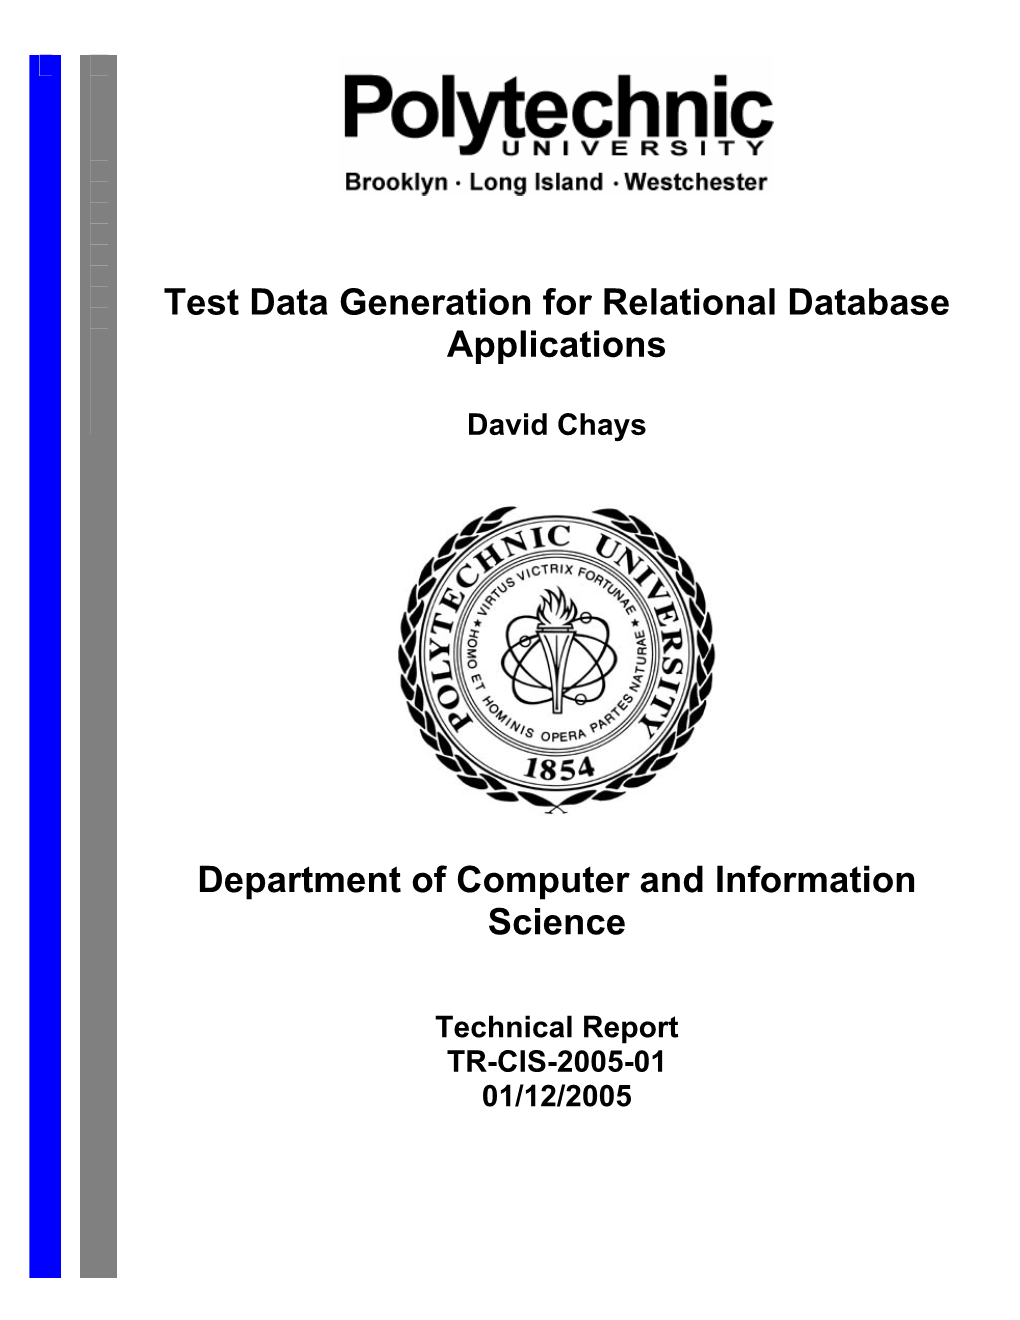 Database Test Data Generation